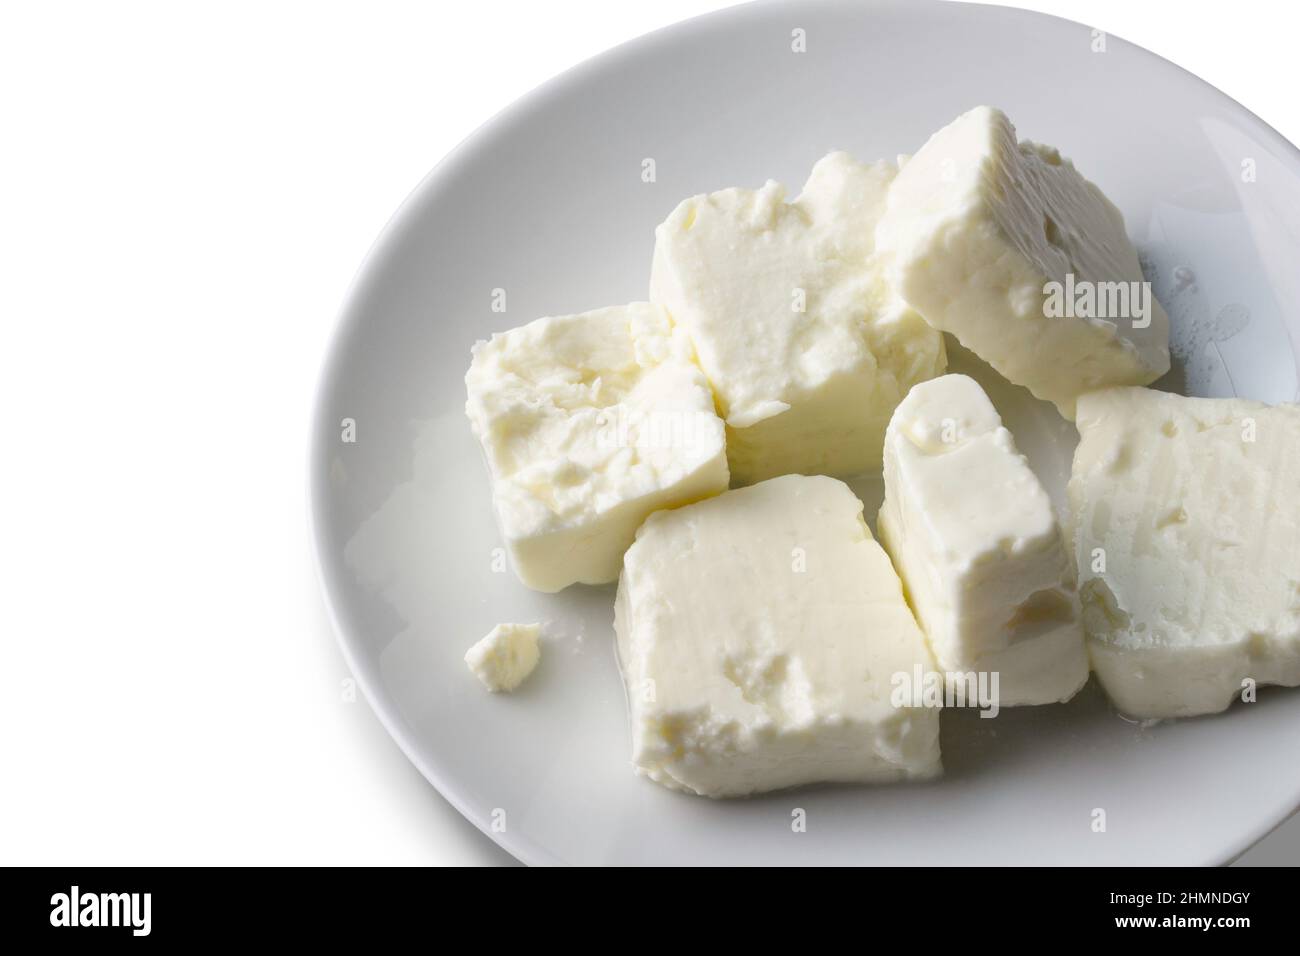 Teller mit weichem weißem Käse auf weißem Hintergrund - Feta-Würfel Stockfoto